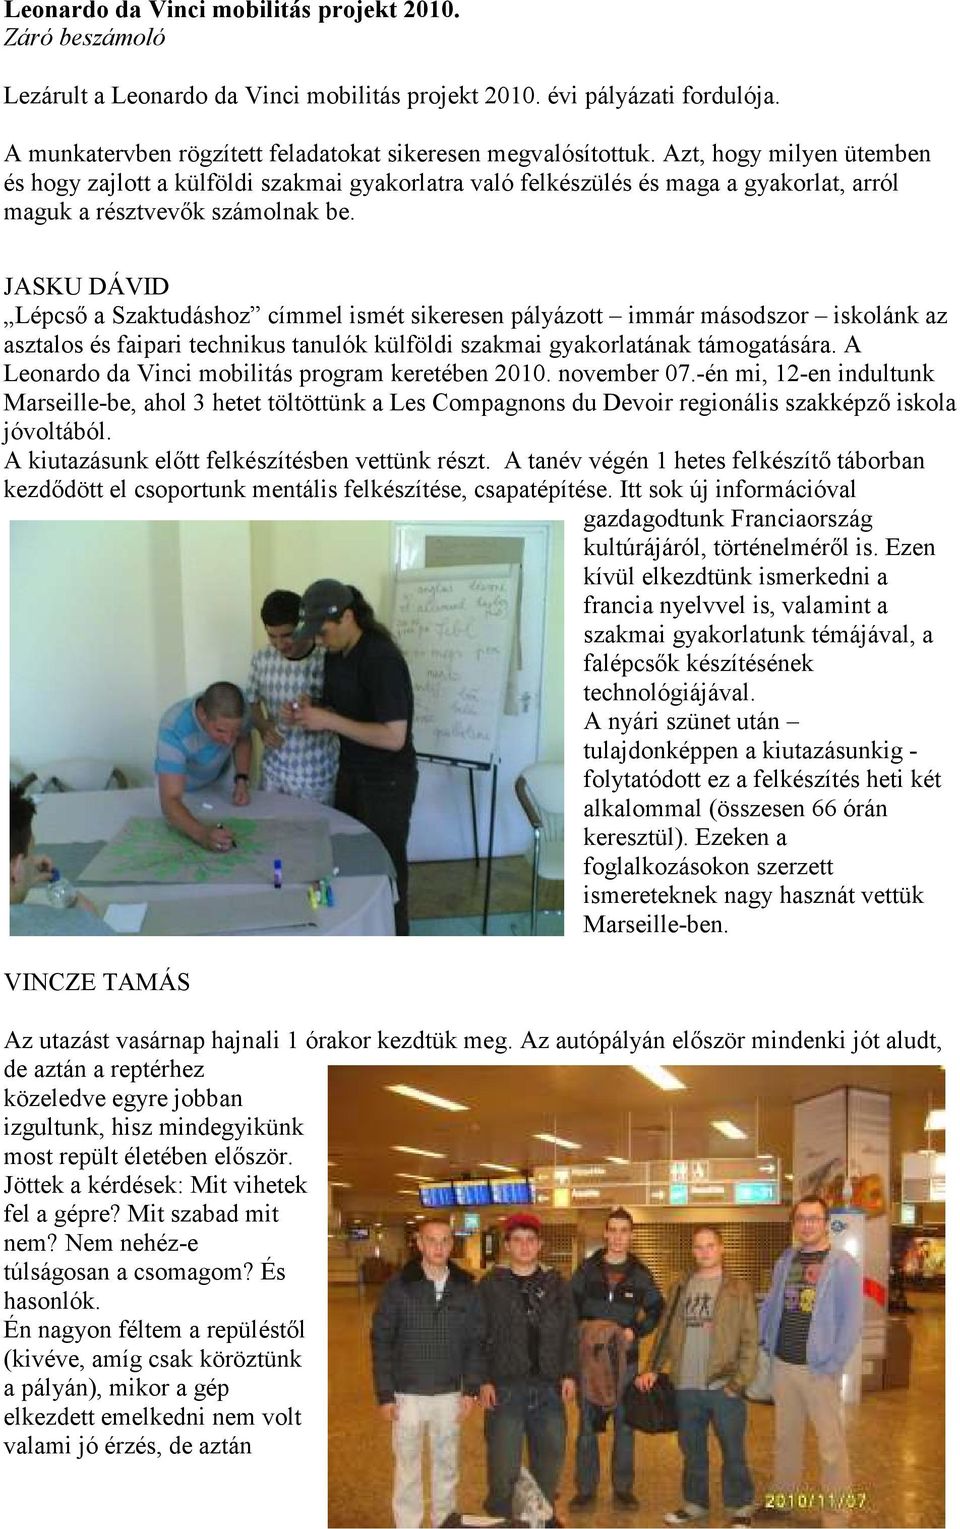 JASKU DÁVID Lépcső a Szaktudáshoz címmel ismét sikeresen pályázott immár másodszor iskolánk az asztalos és faipari technikus tanulók külföldi szakmai gyakorlatának támogatására.